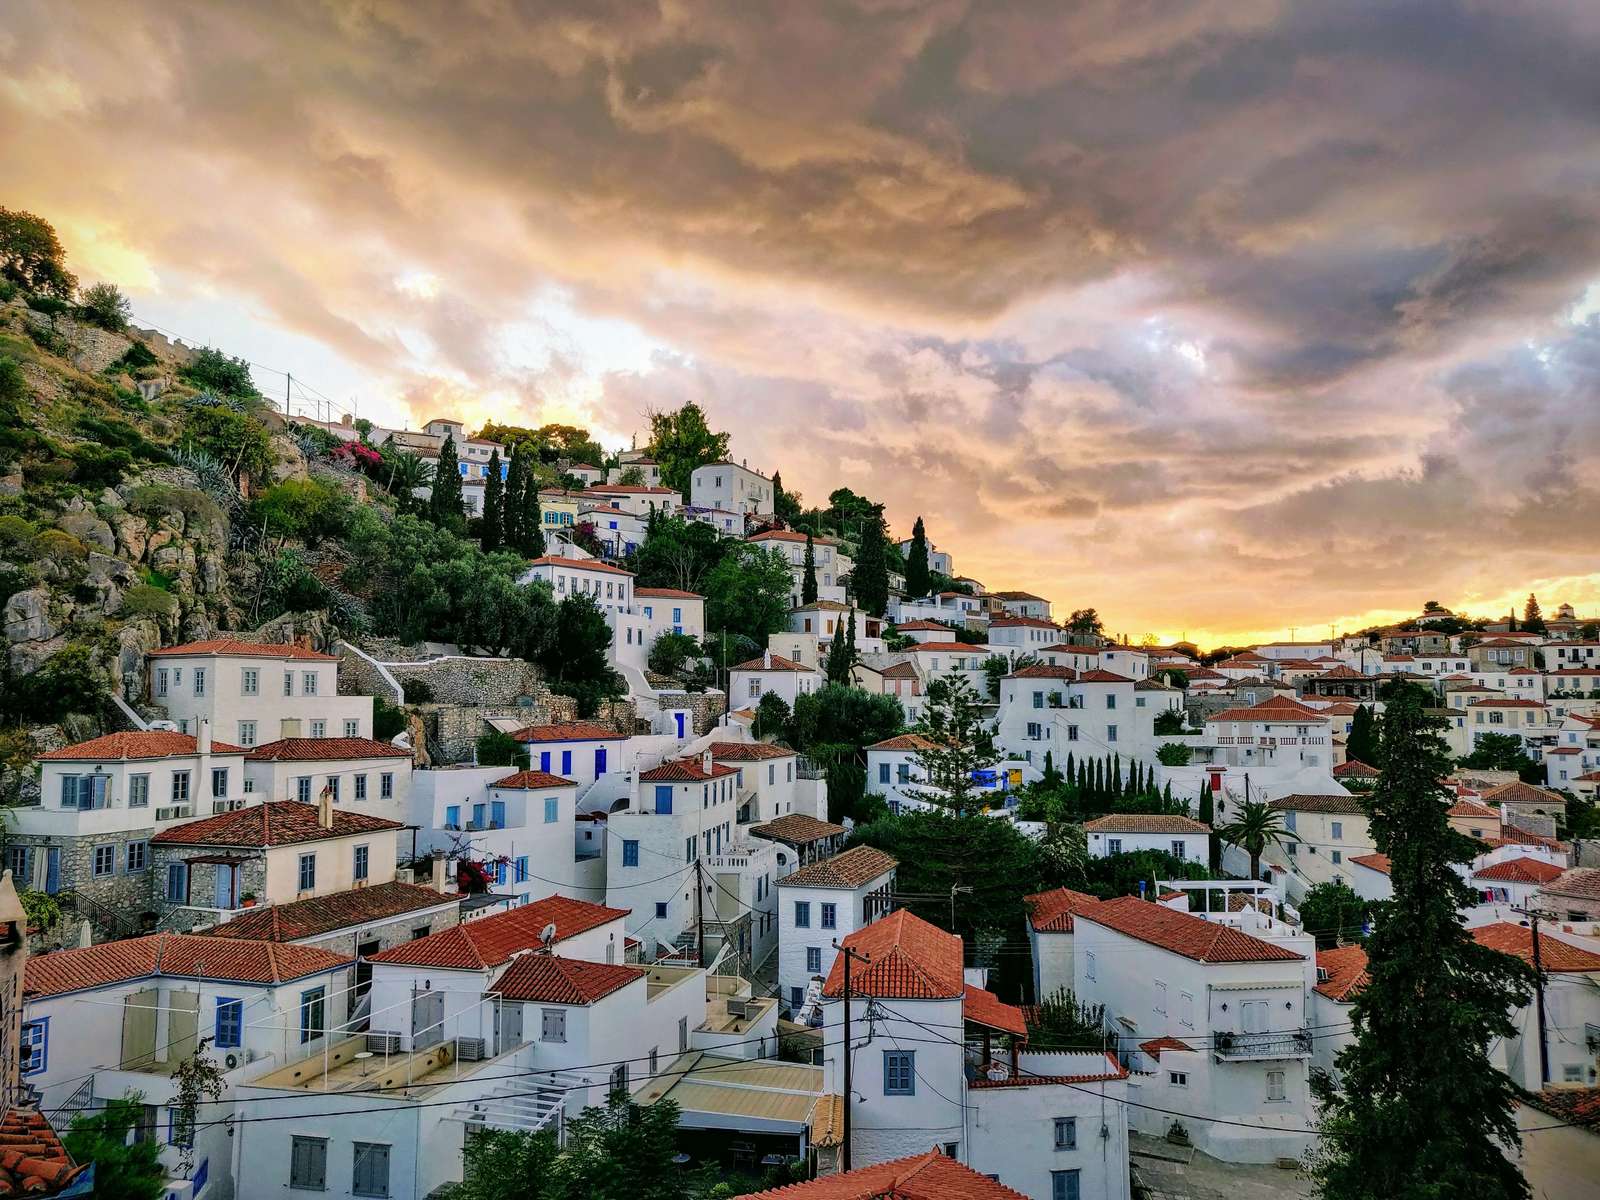 Гидра, Греция онлайн-пазл